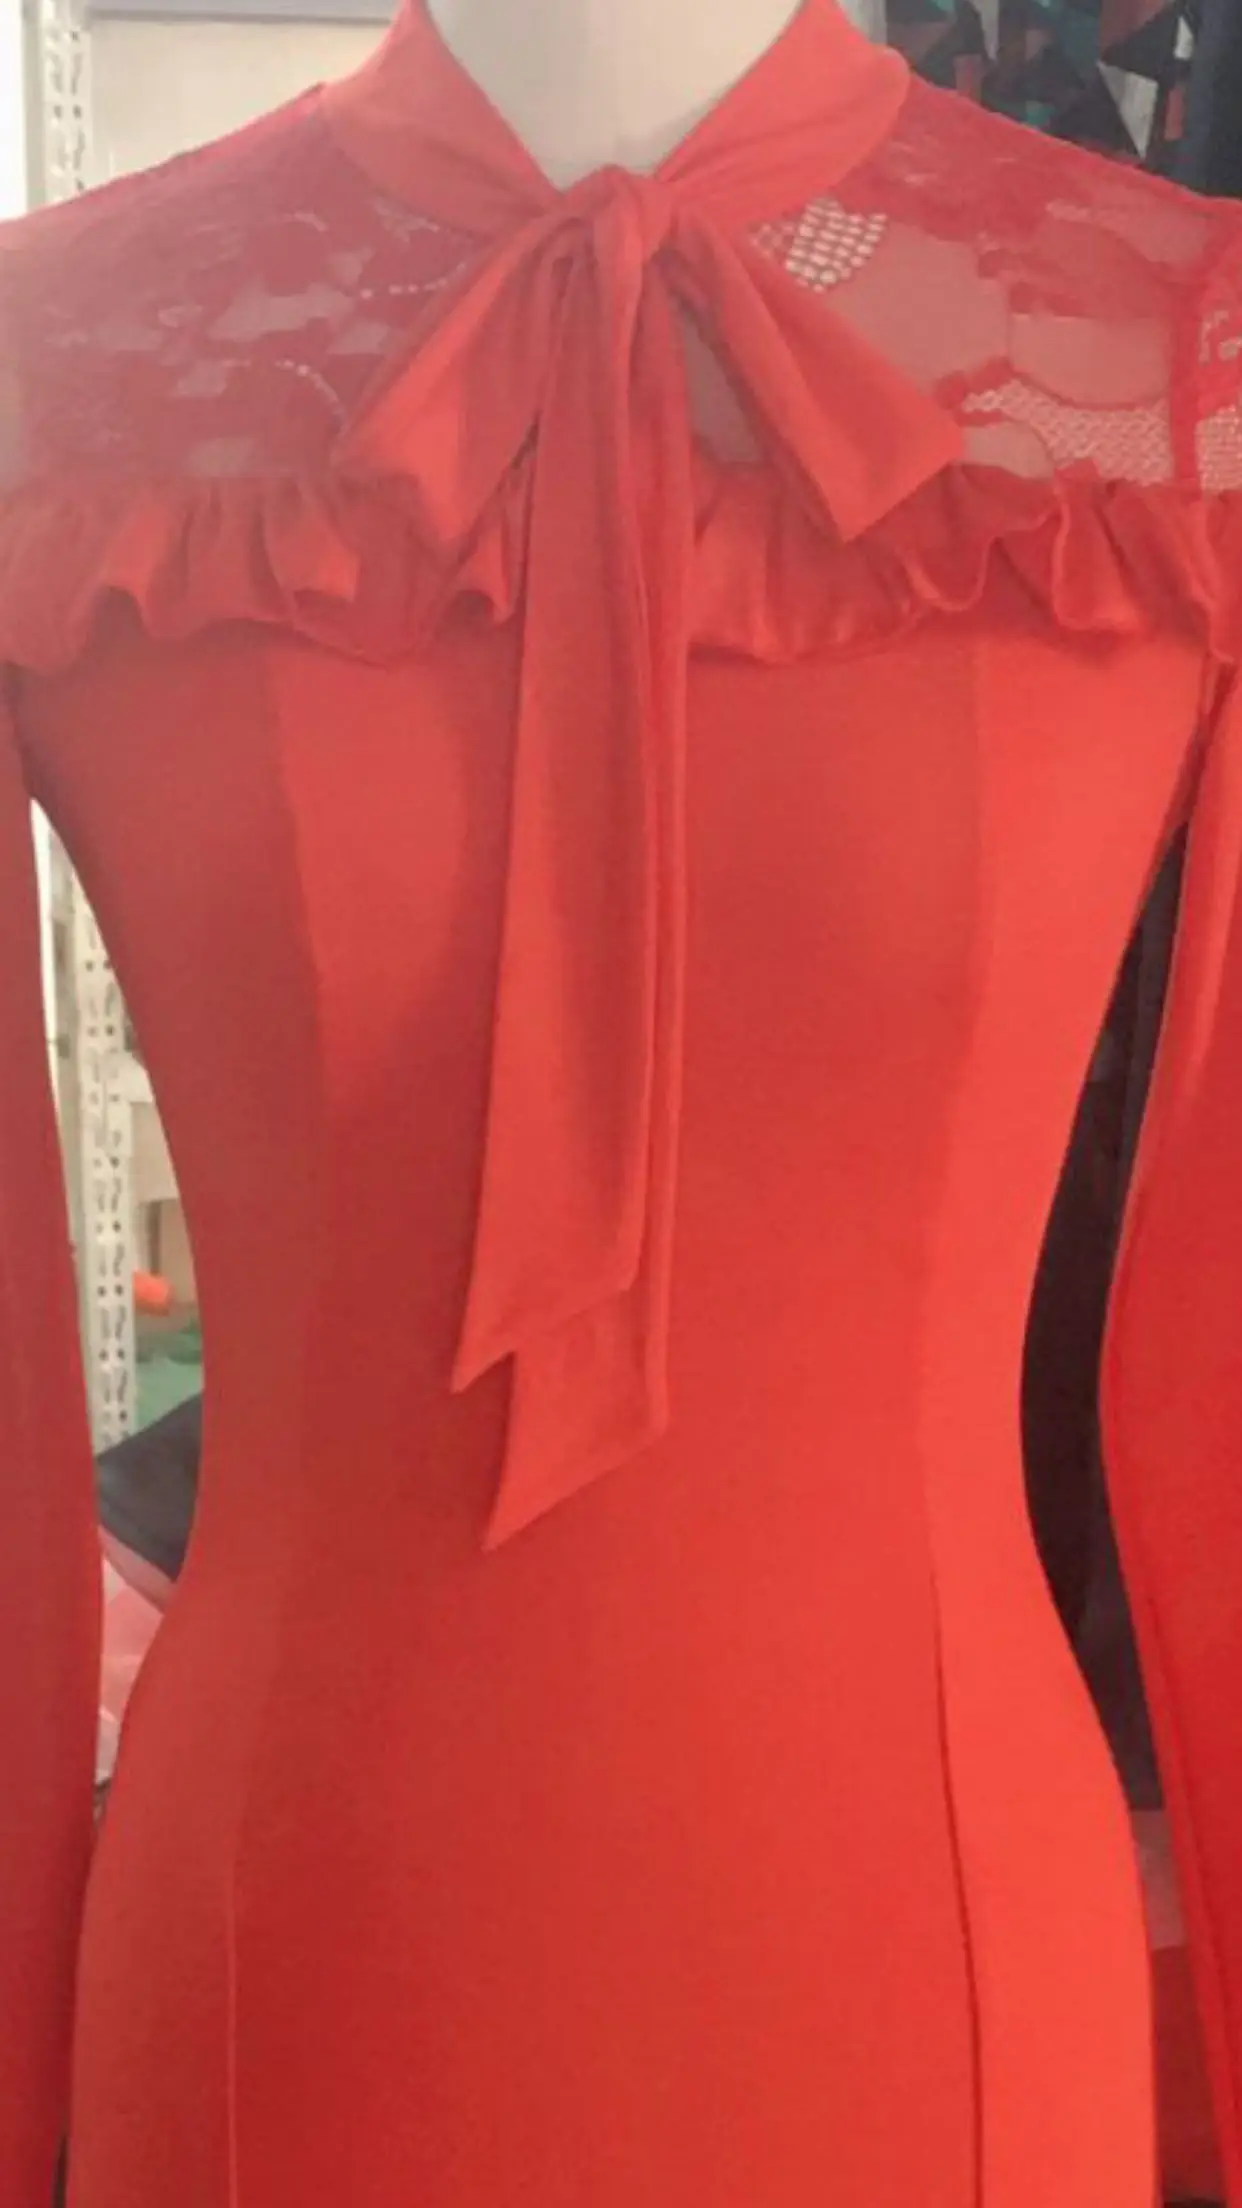 Дешевые Бальные платья вальс танцевальное платье Стандартный костюм редтанго испанские платья фламенко танцевальная одежда кружевное длинное платье качели - Цвет: Red